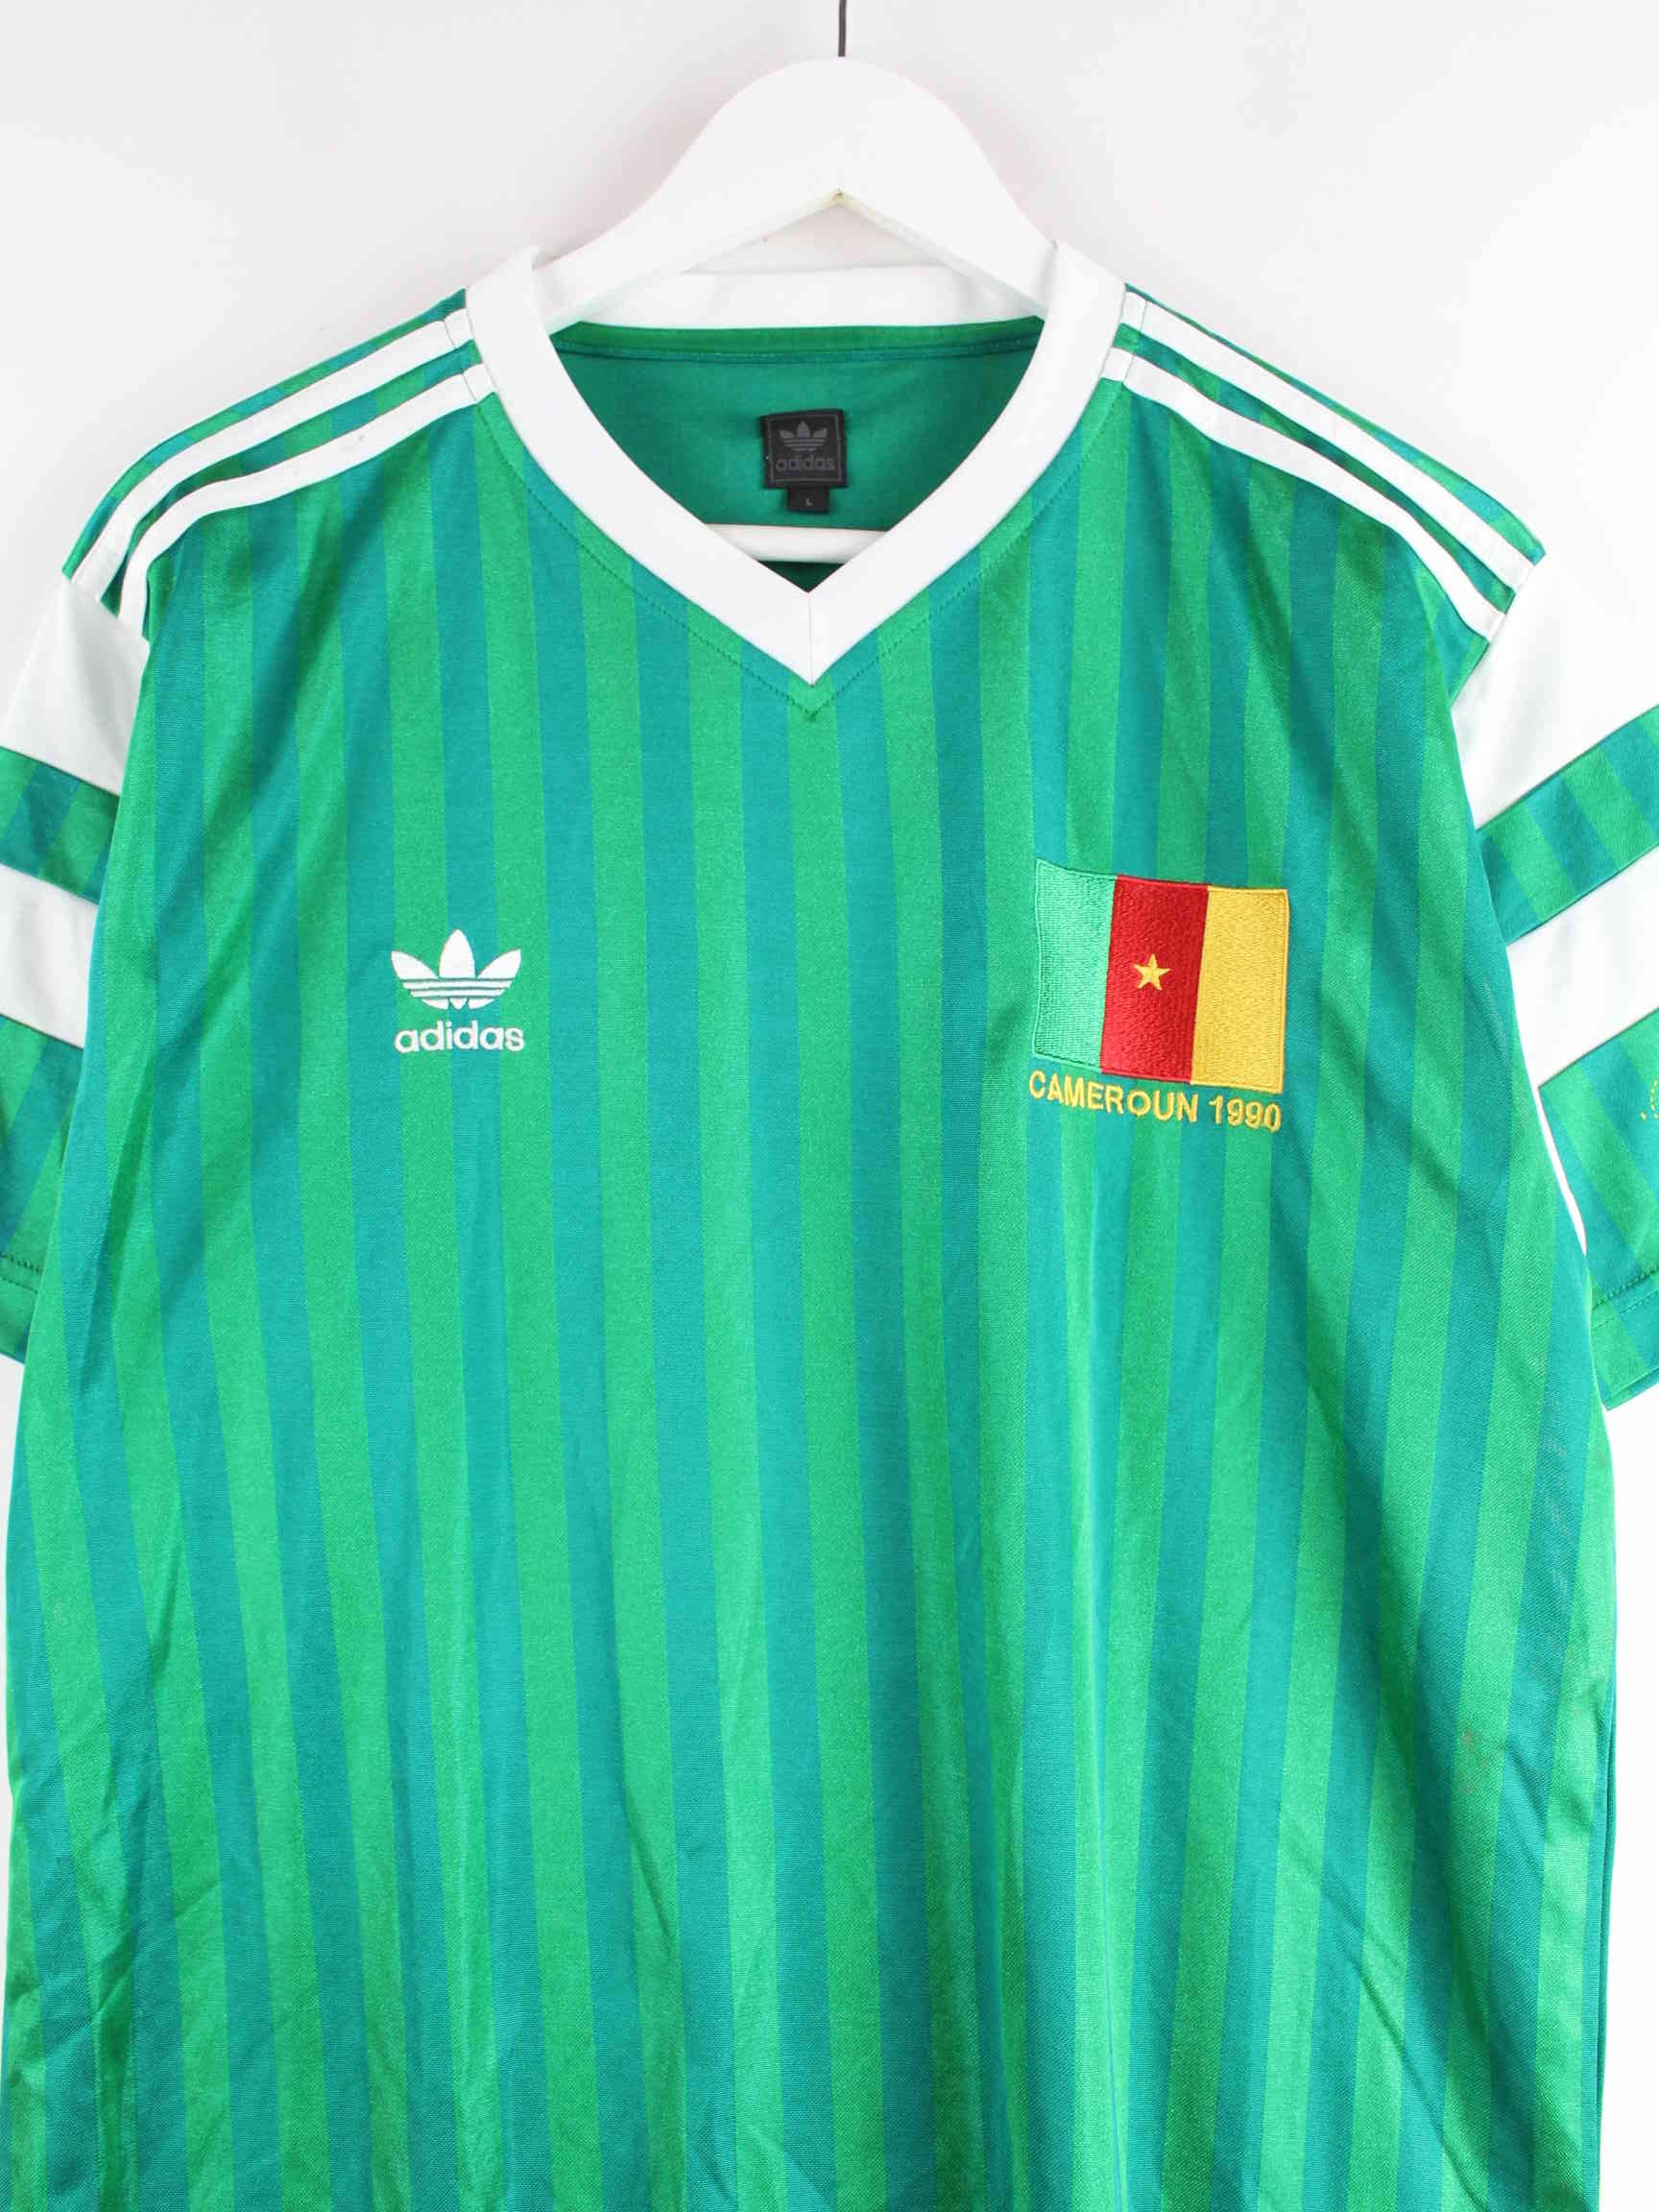 Adidas 1990 Cameroun Trikot Grün L (detail image 1)